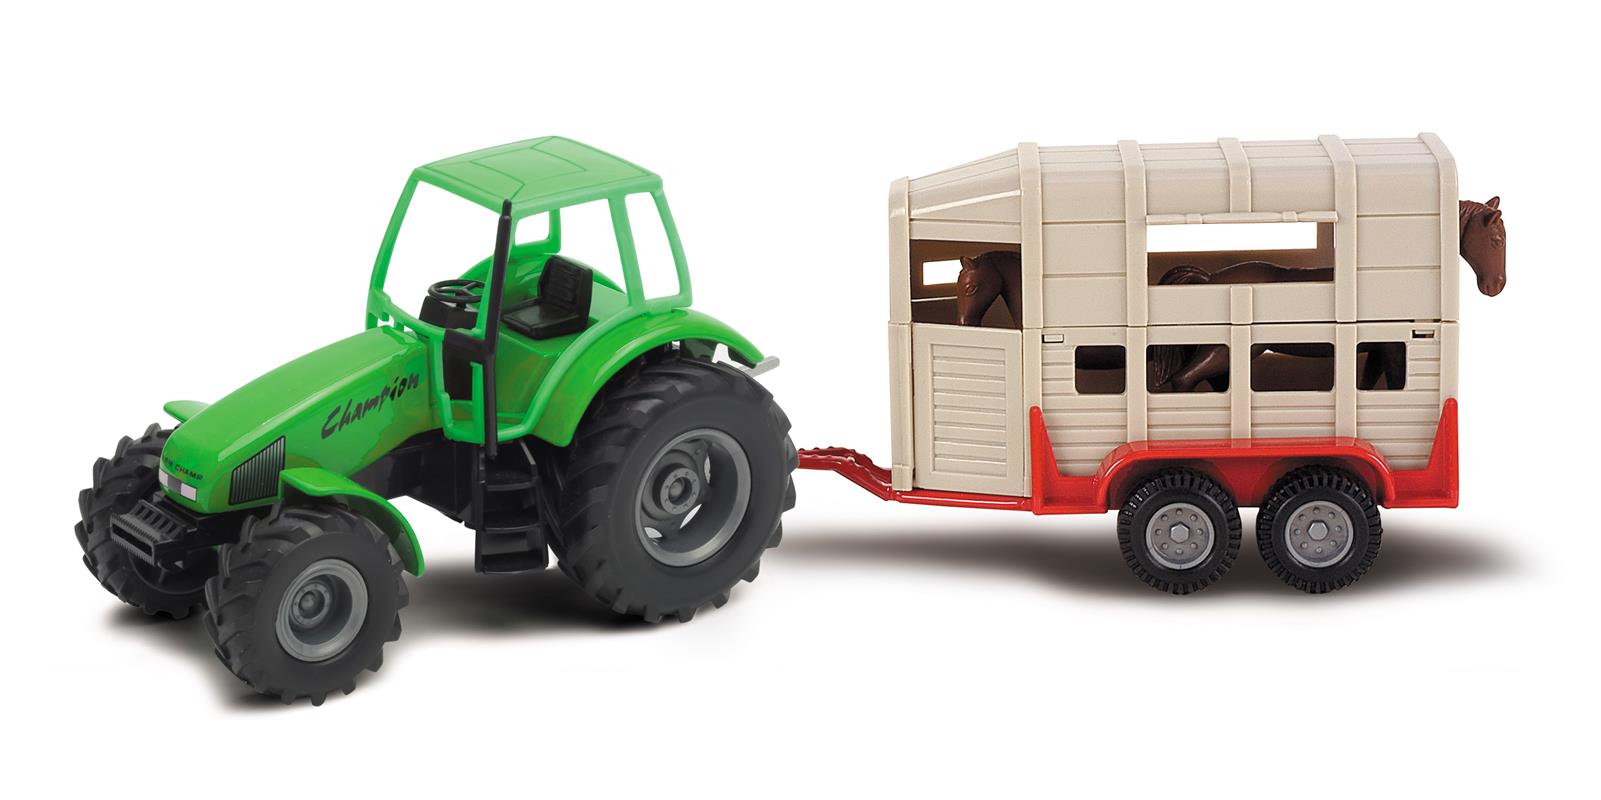 Traktor Spielzeug 1:32 Metall und Kunststoff Trecker Kinder Auto